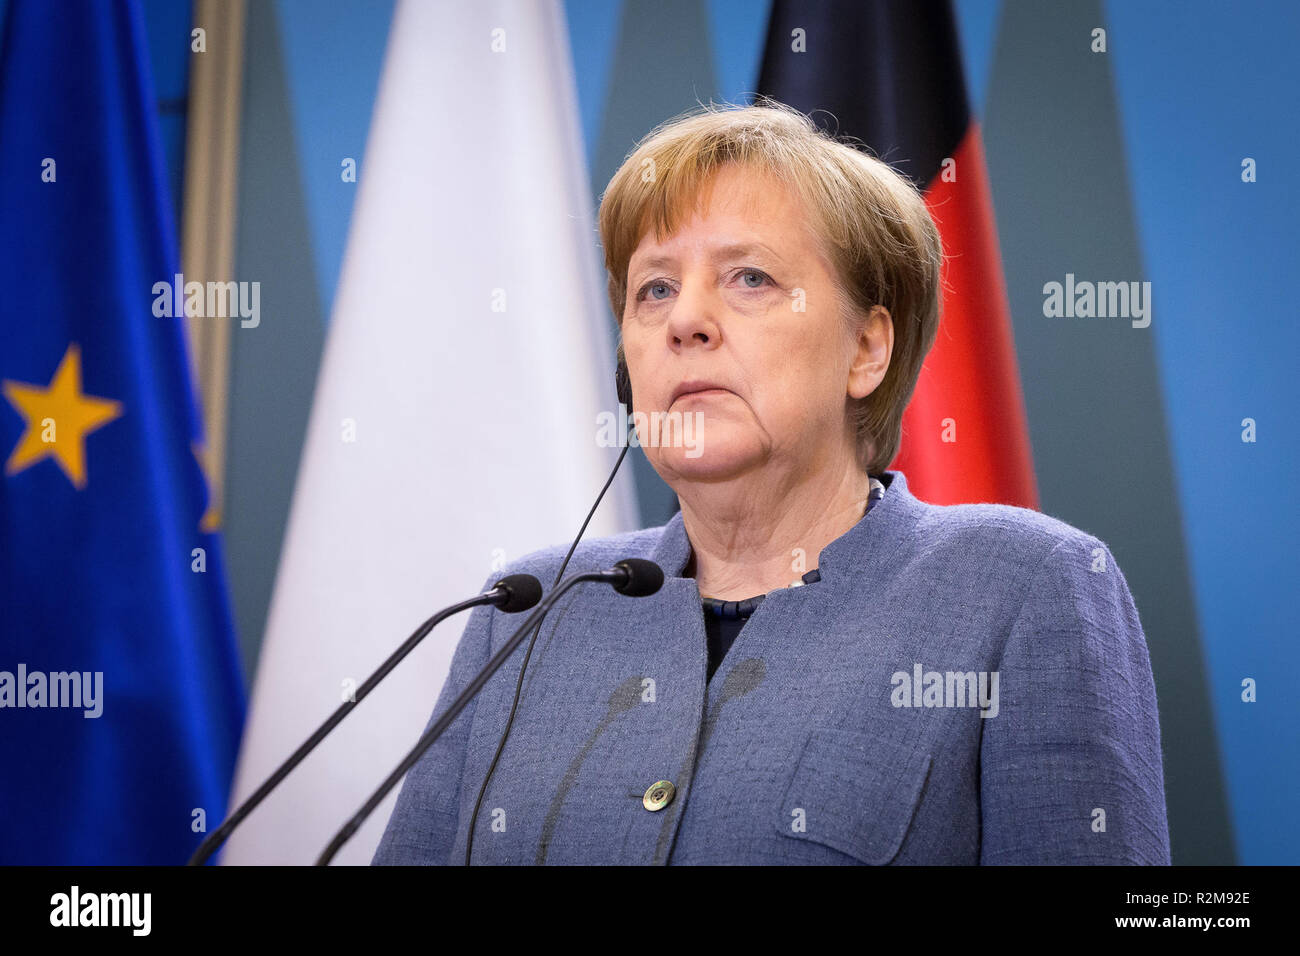 La chancelière allemande, Angela Merkel, assister à une conférence de presse avec le Premier ministre polonais, Mateusz Morawiecki après leur réunion à la Chancellerie du Premier ministre à Varsovie, Pologne, le 19 mars 2018 Banque D'Images